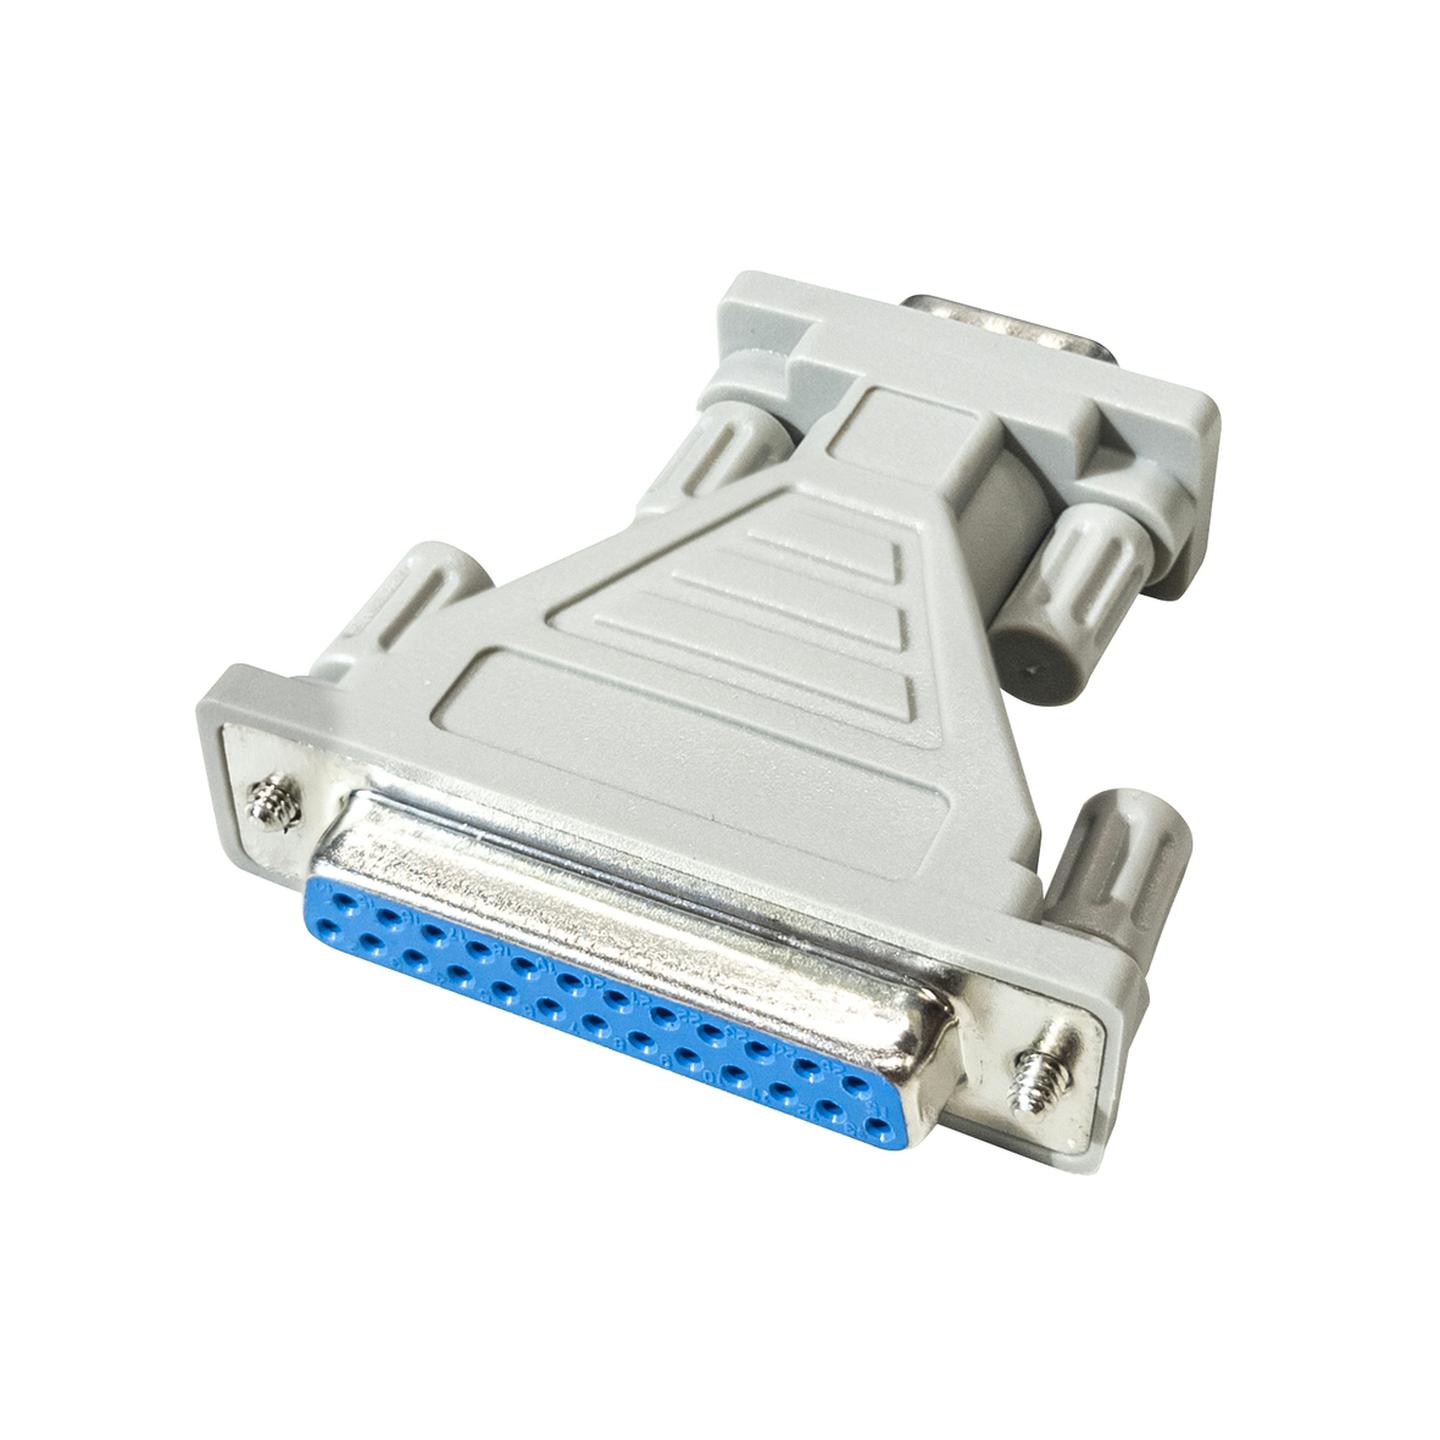 D9 Plug to D25 Socket Computer Adaptor